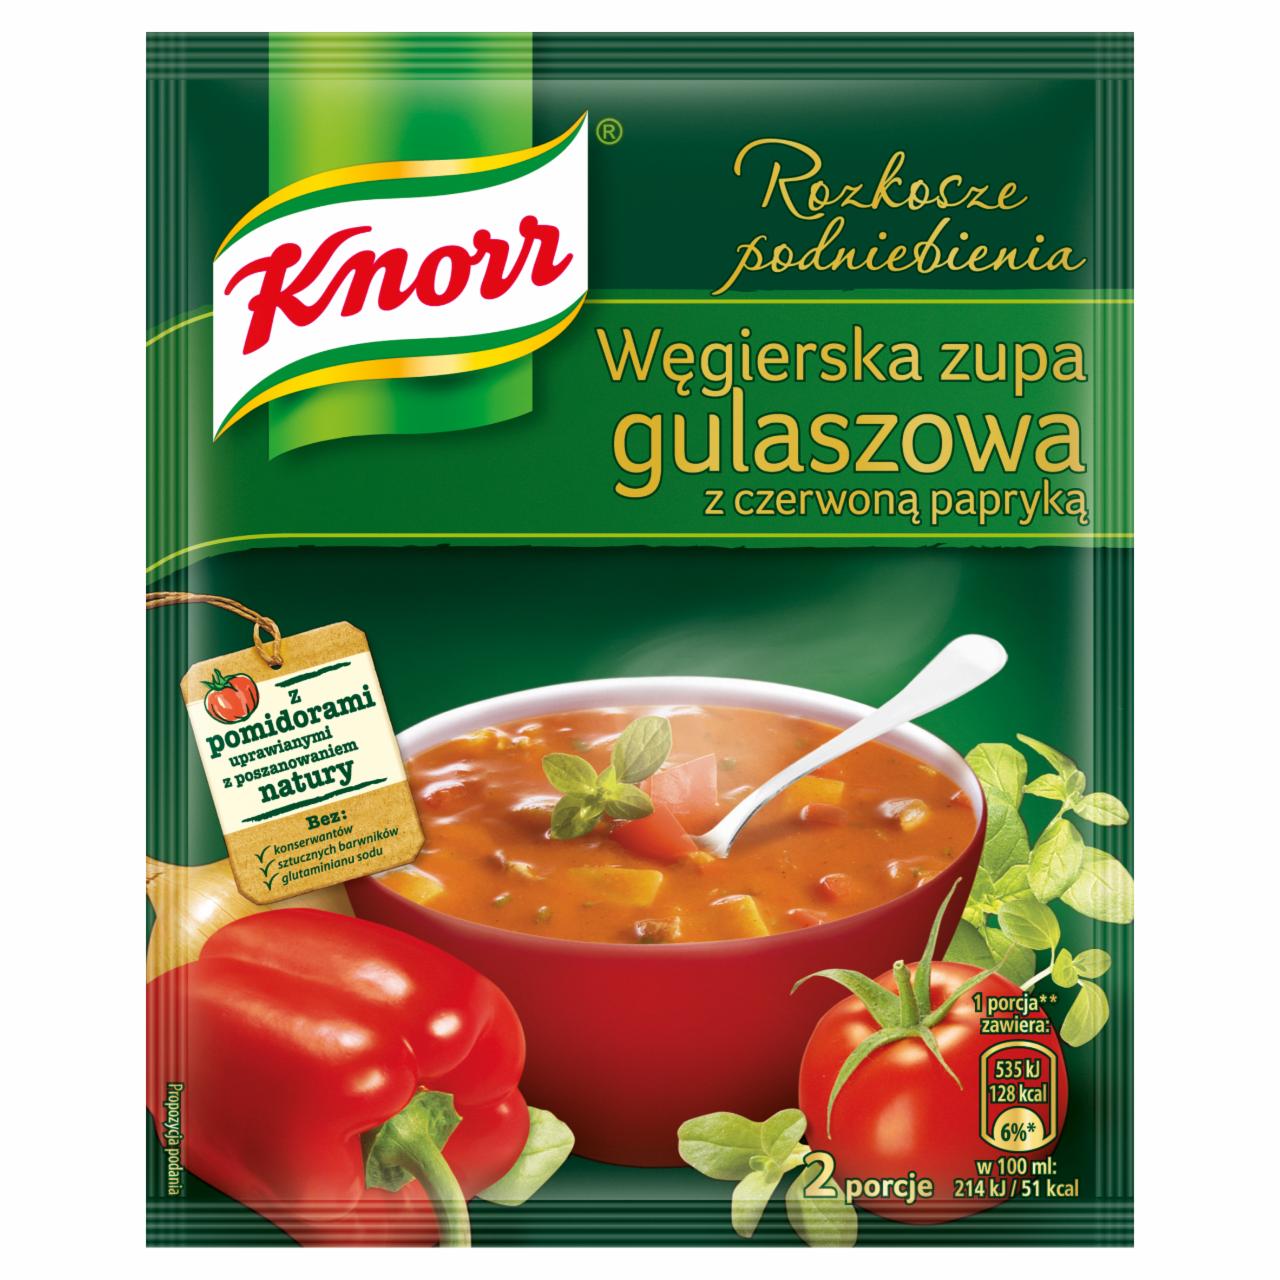 Zdjęcia - Knorr Rozkosze podniebienia Węgierska zupa gulaszowa z czerwoną papryką 60 g